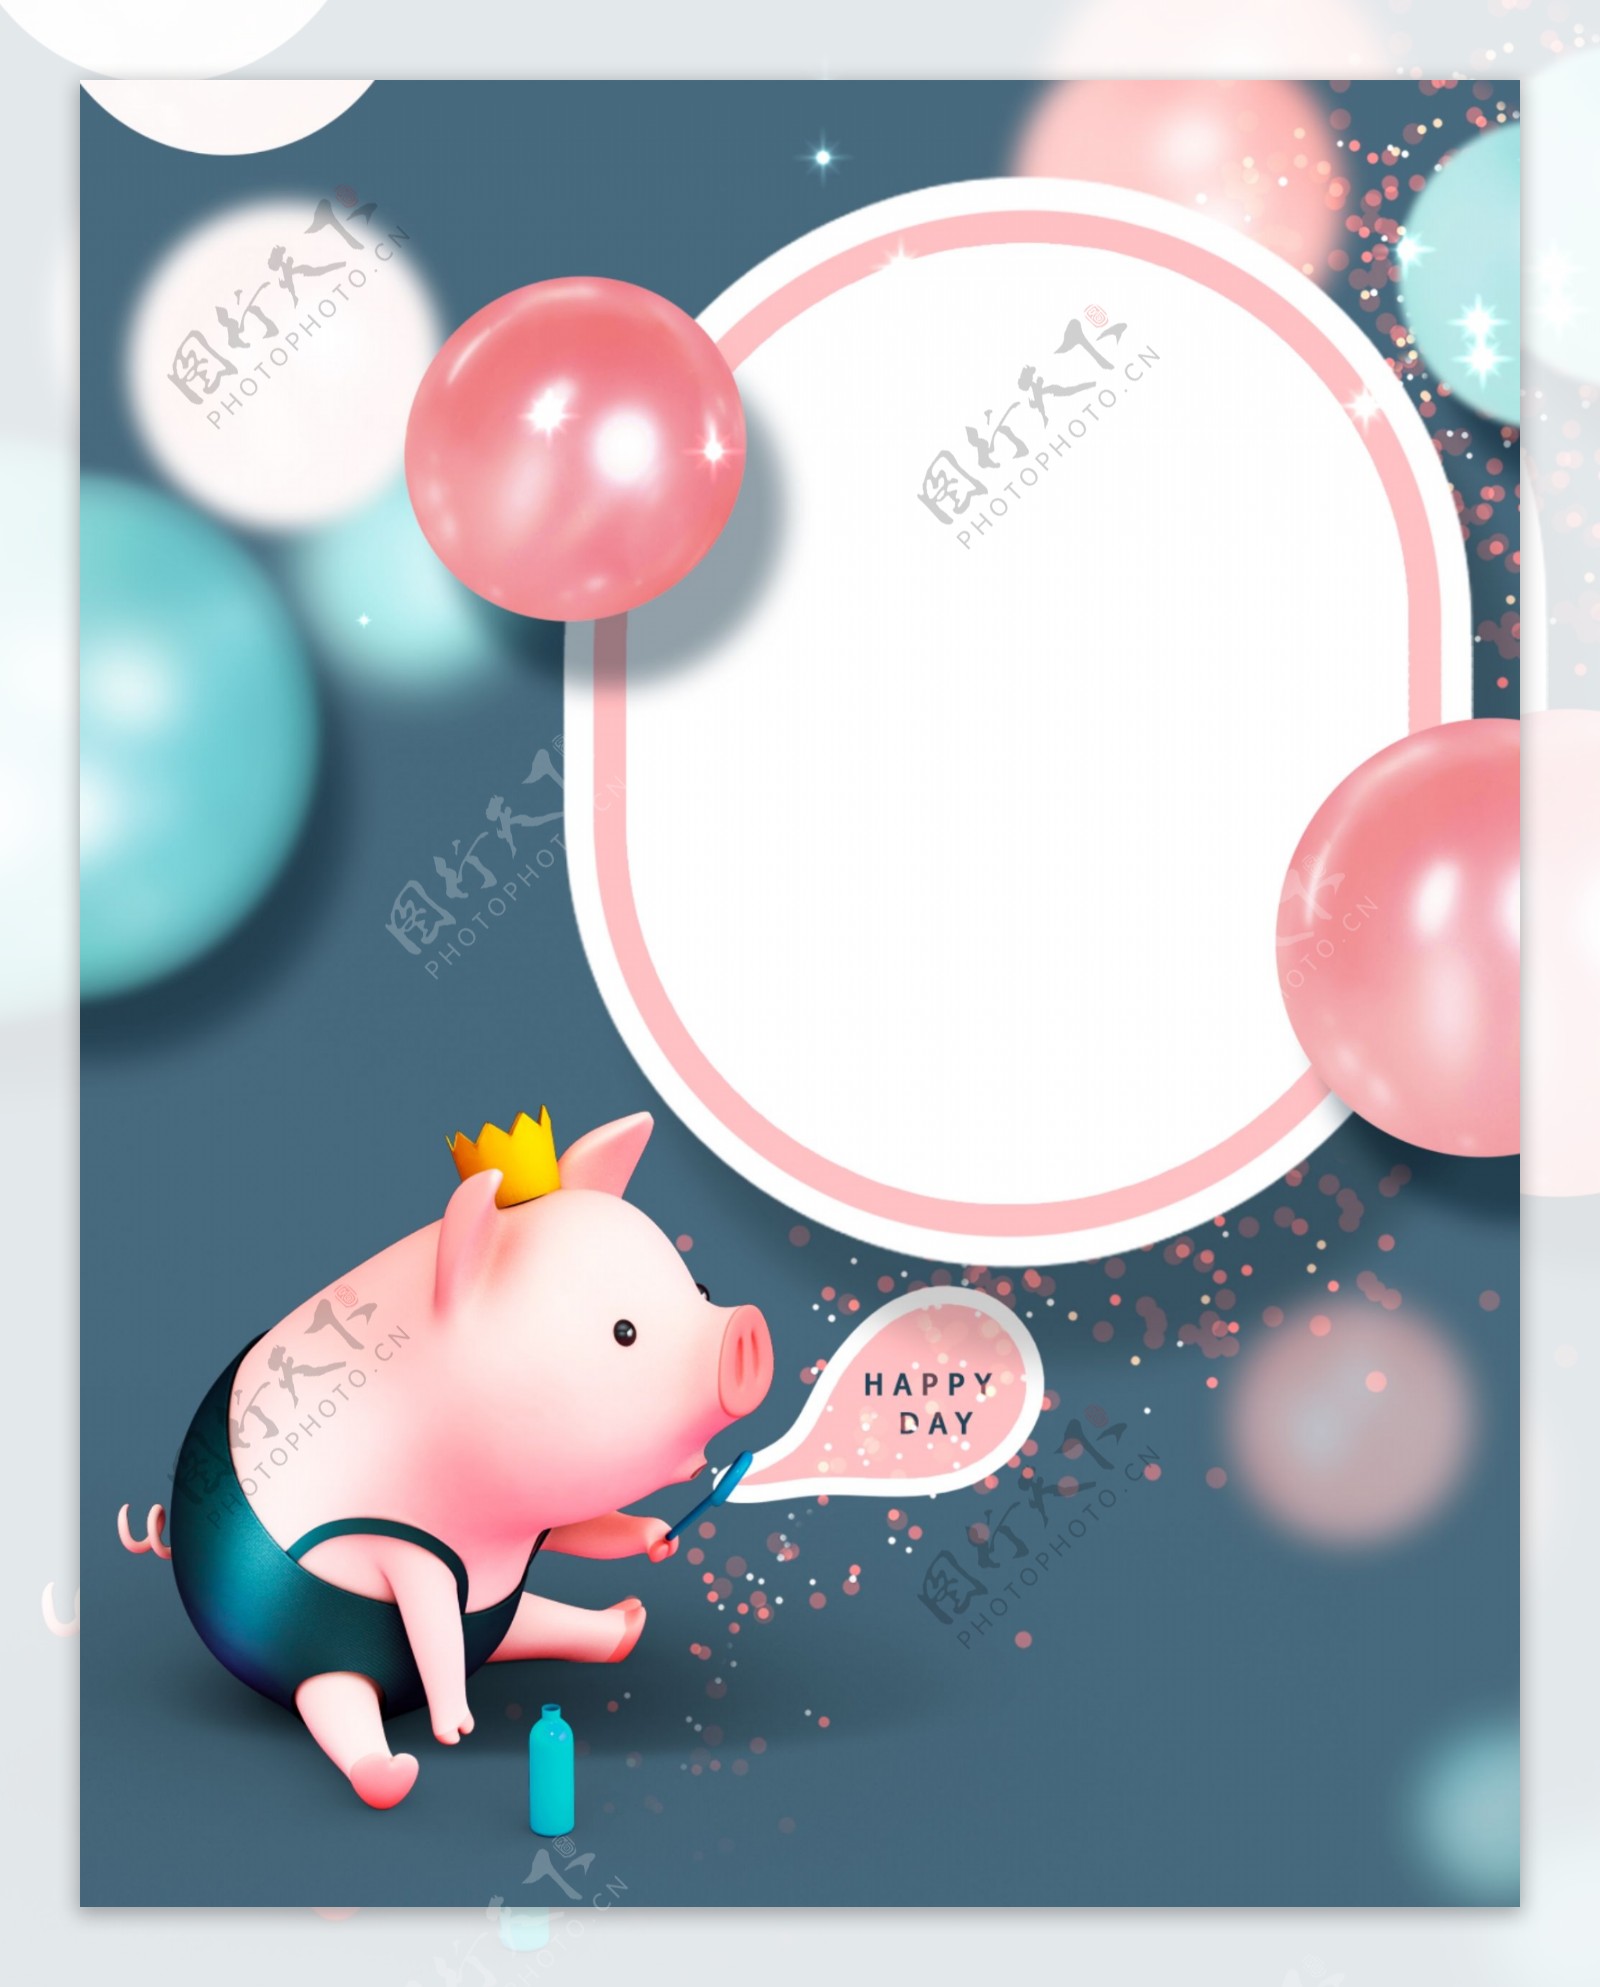 可爱猪年新年贺卡气球背景设计